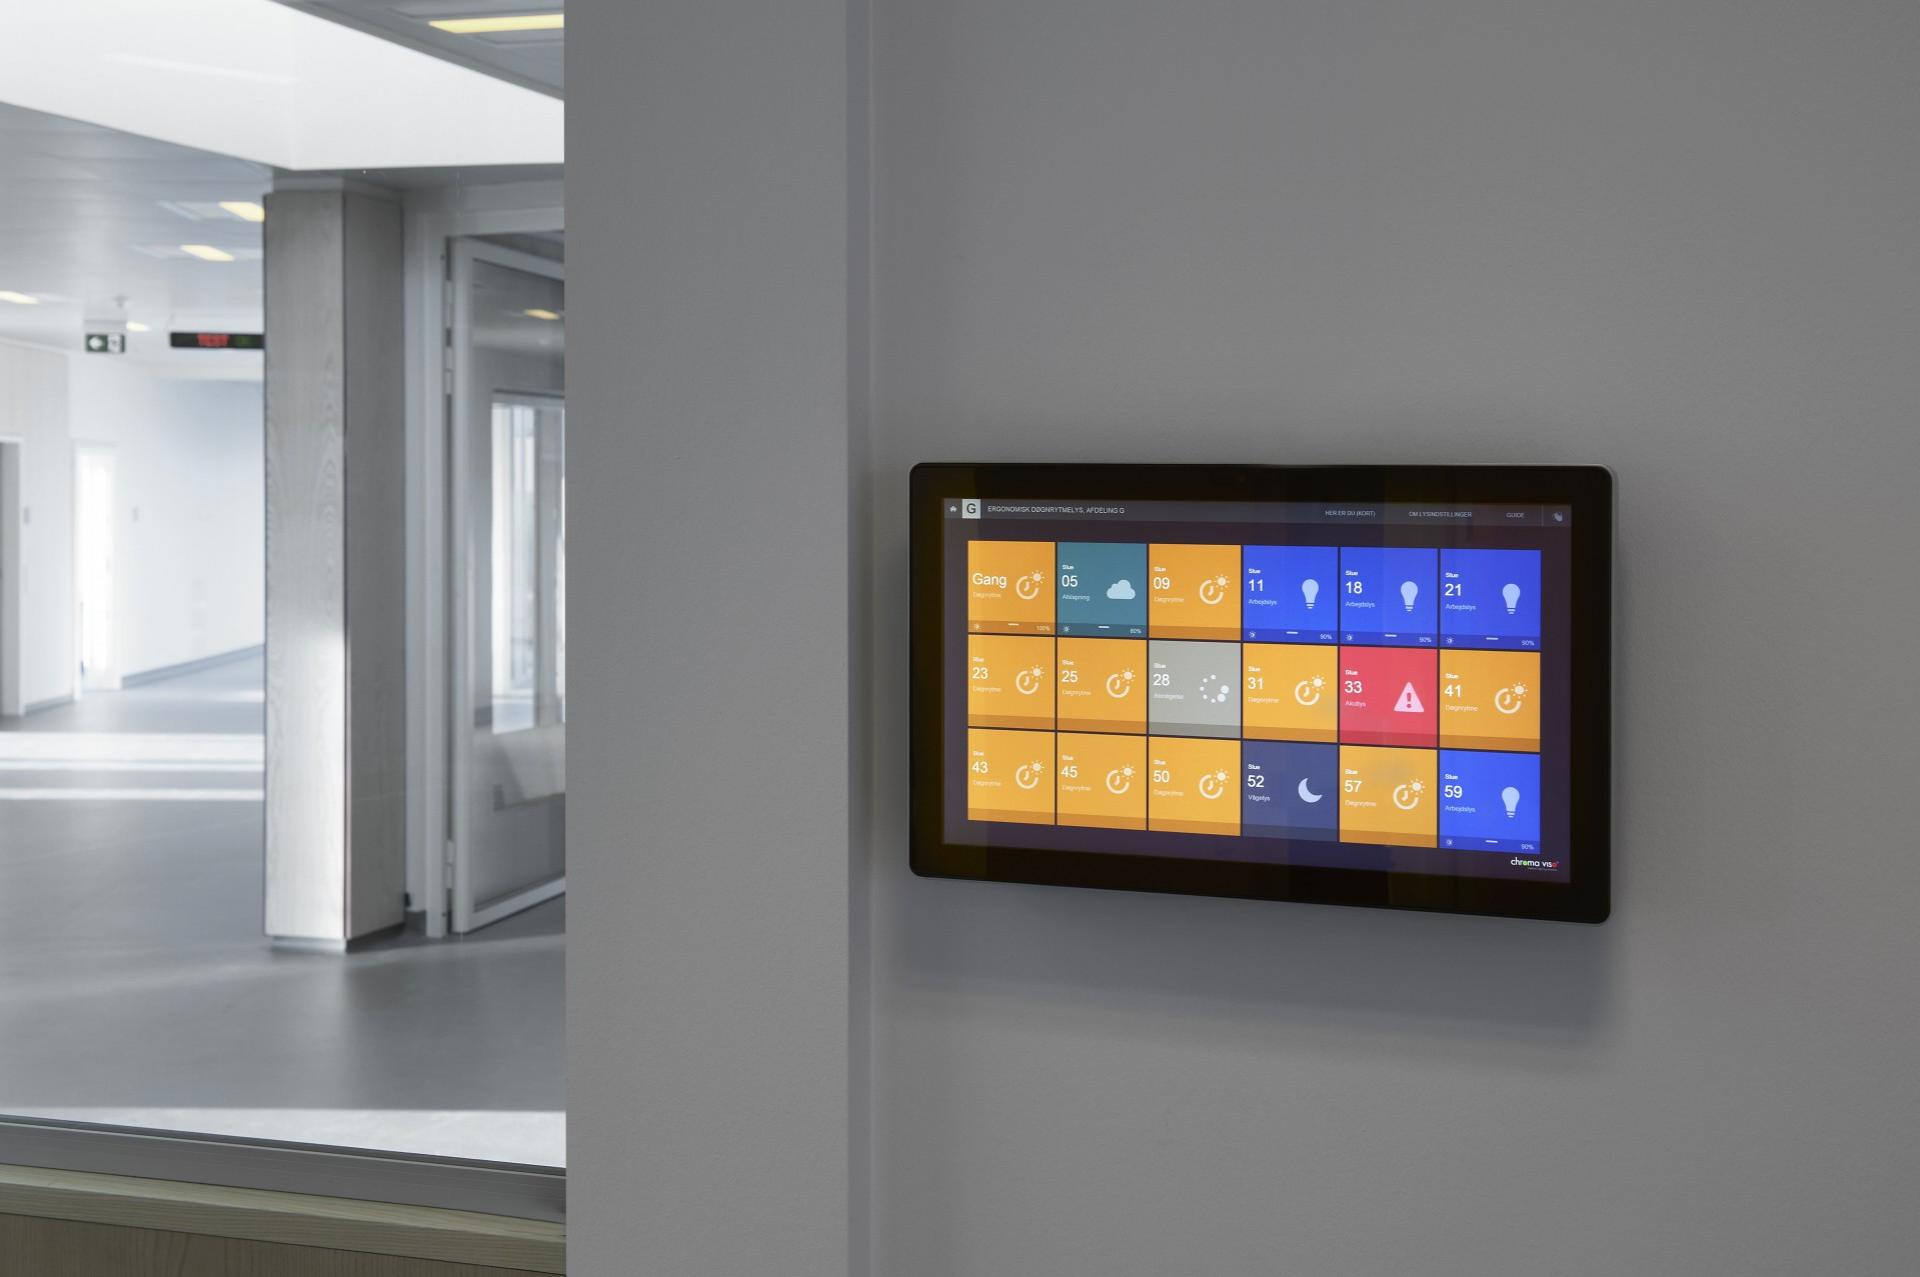 Touch skærmen giver personalet mulighed for at skifte lyset centralt. Farverne på knapperne afspejler farverne i lyset. Foto: Chromaviso.